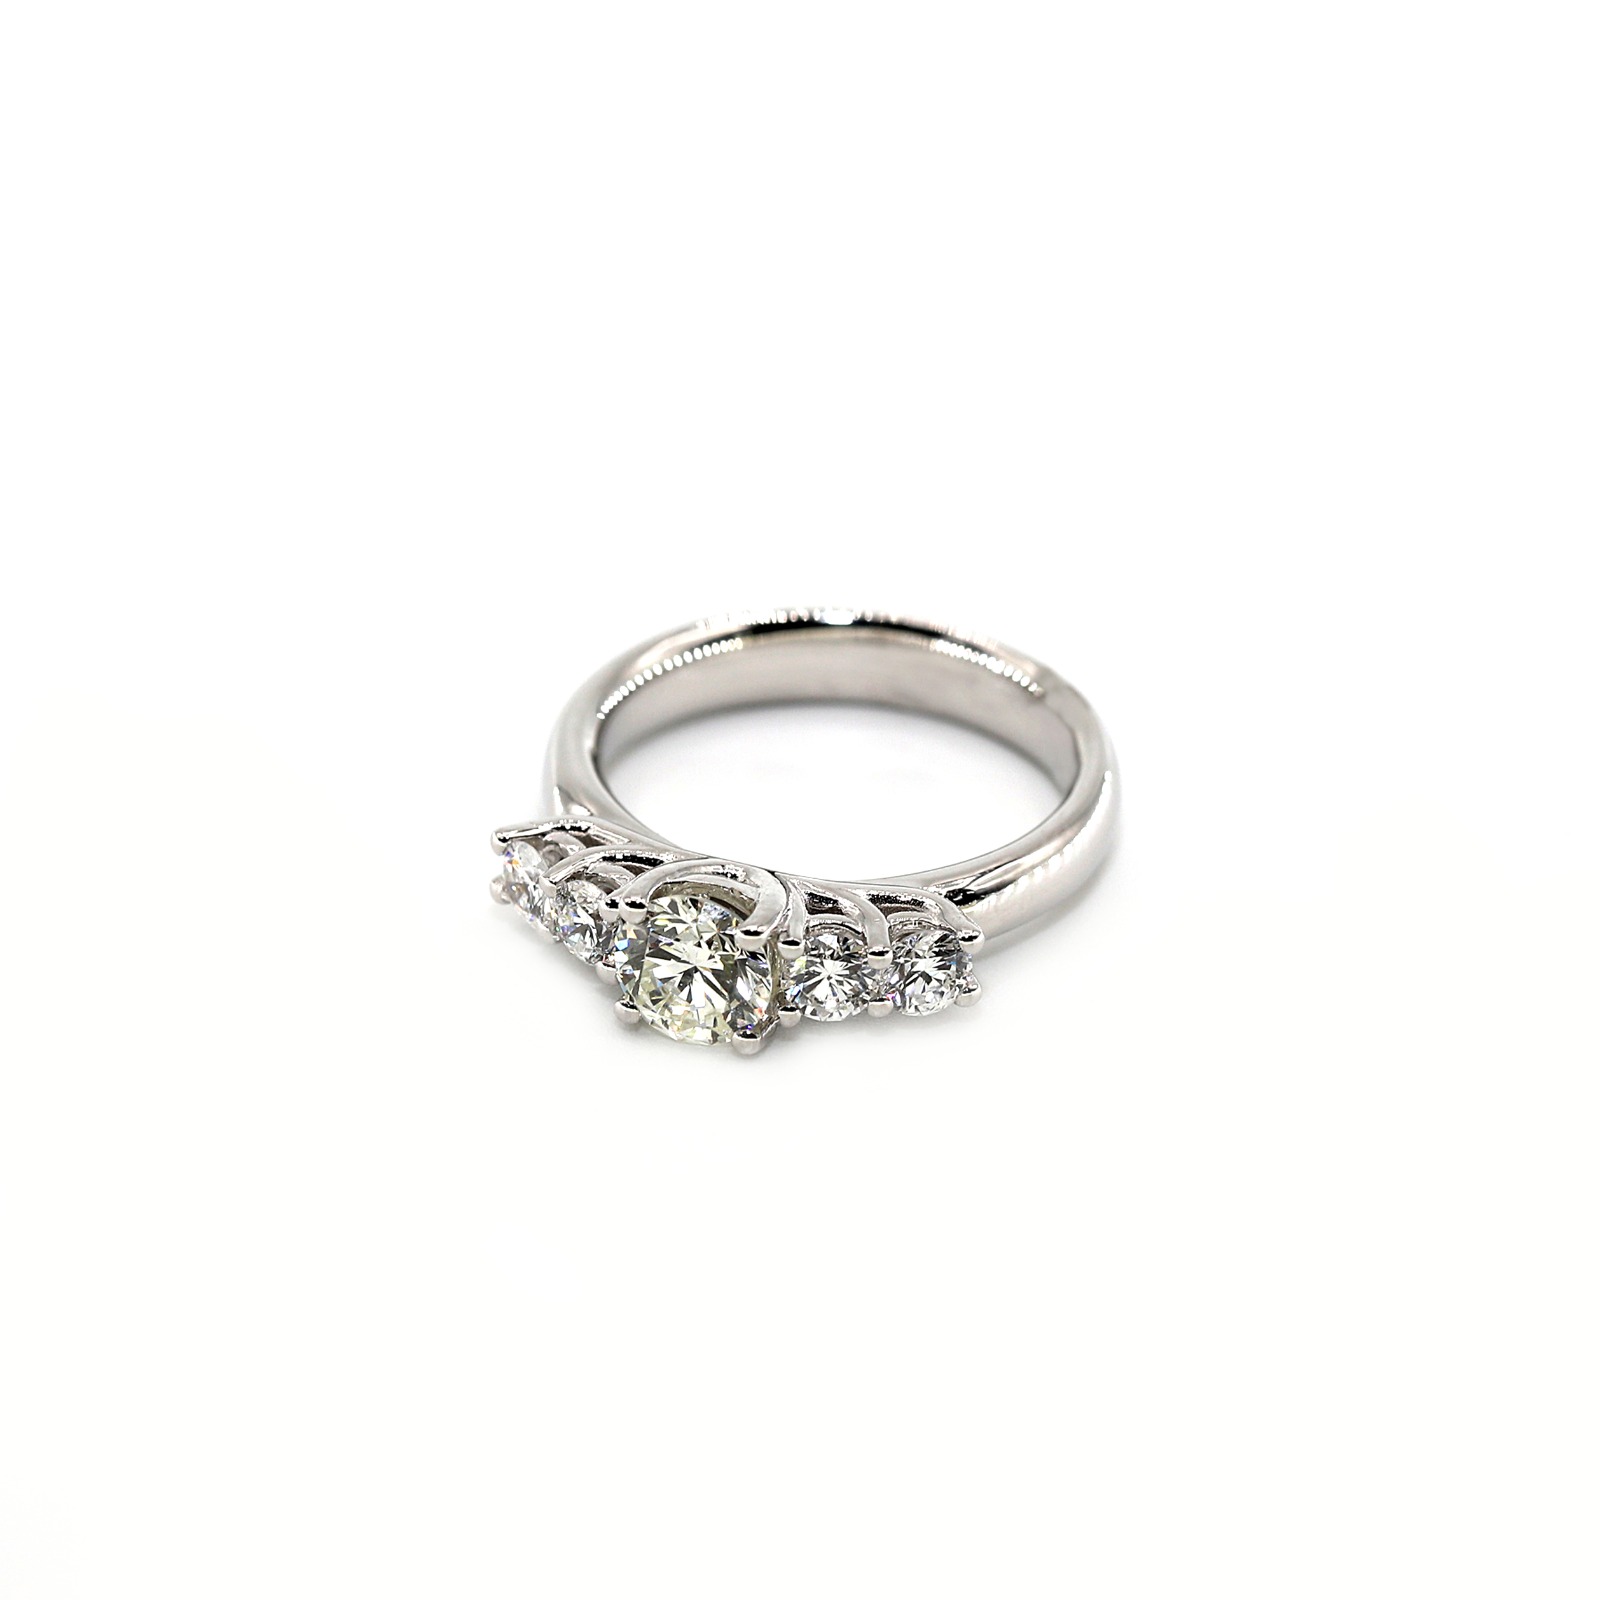 18-karaats witgoud en diamanten speciaal ontworpen damesring - Dagelijkse aanbieding van GoldenEyeJewellery.net